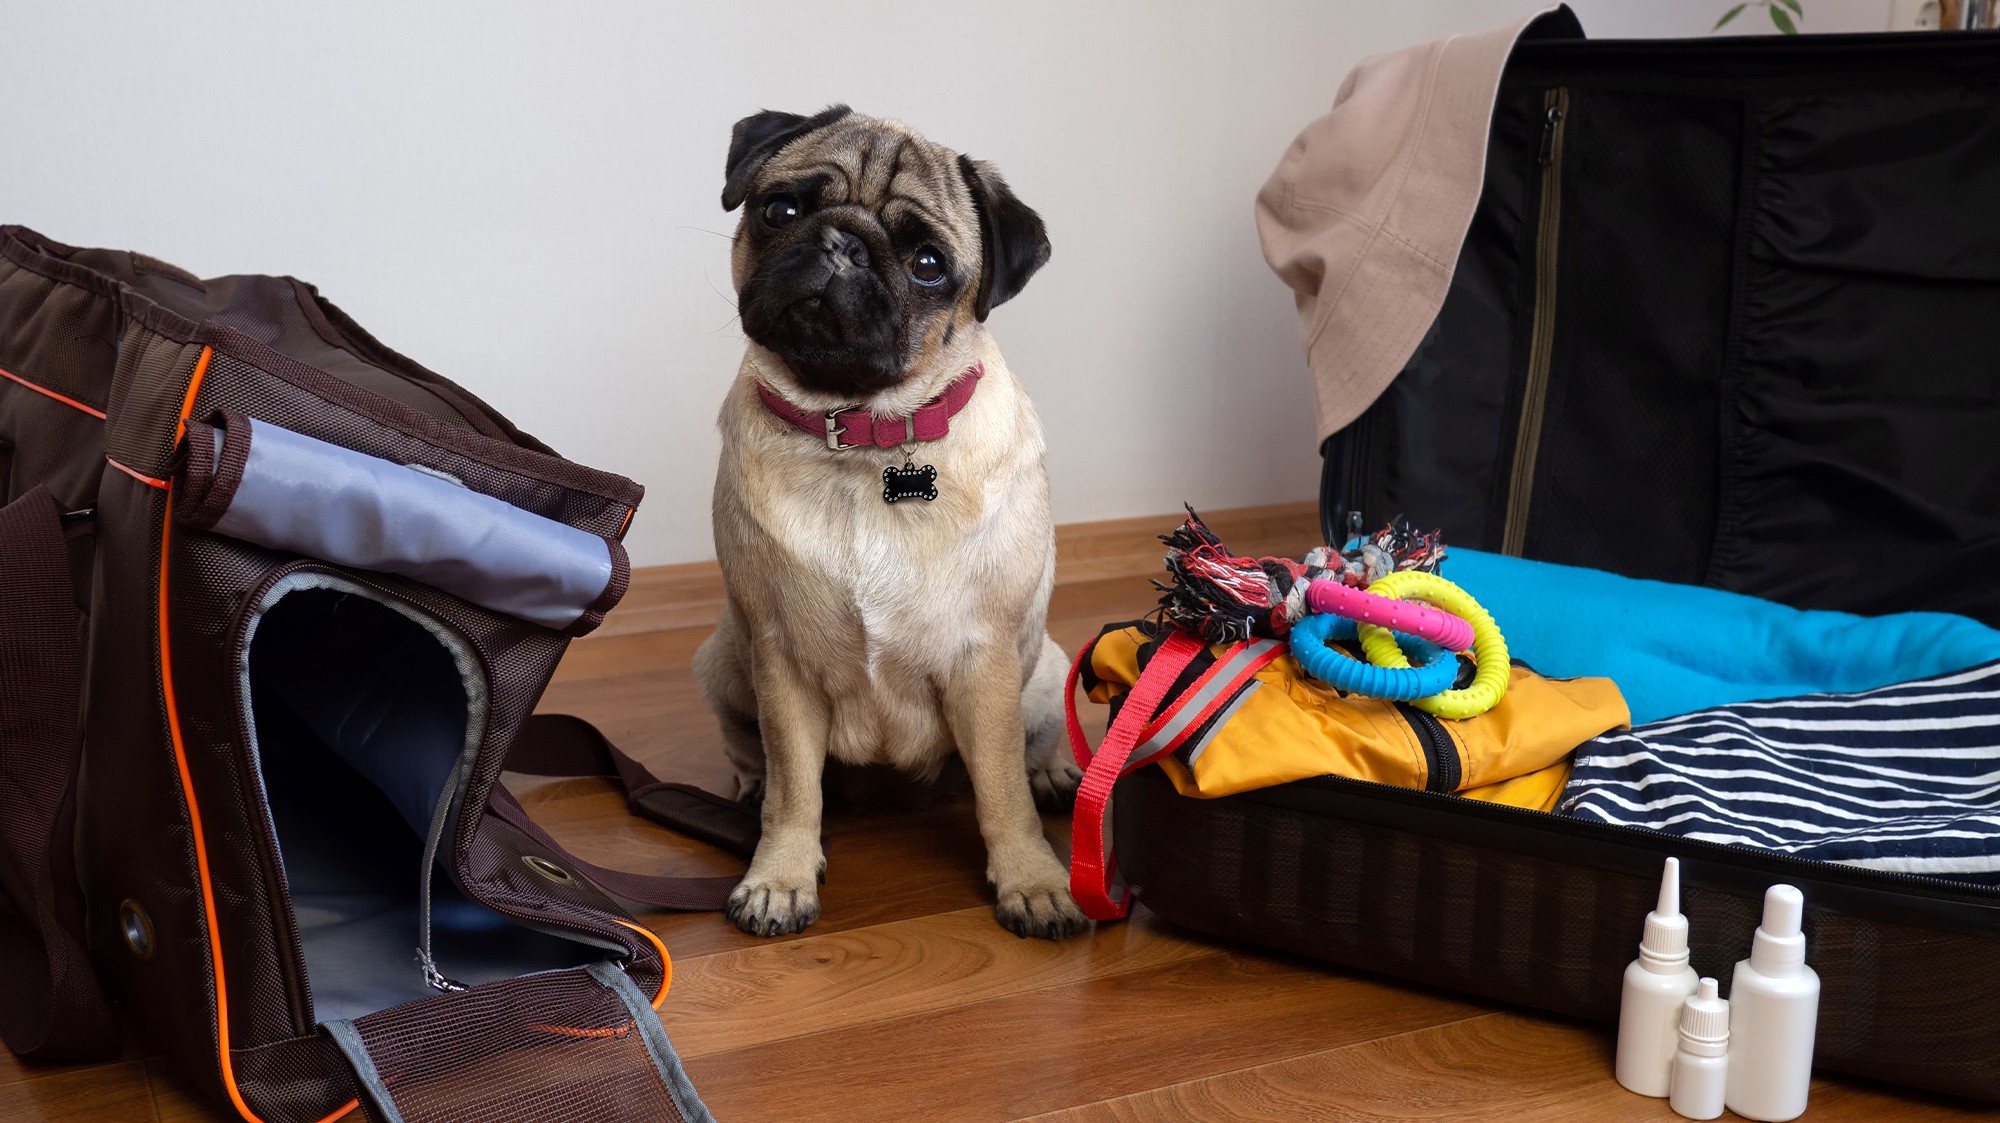 pug with luggage